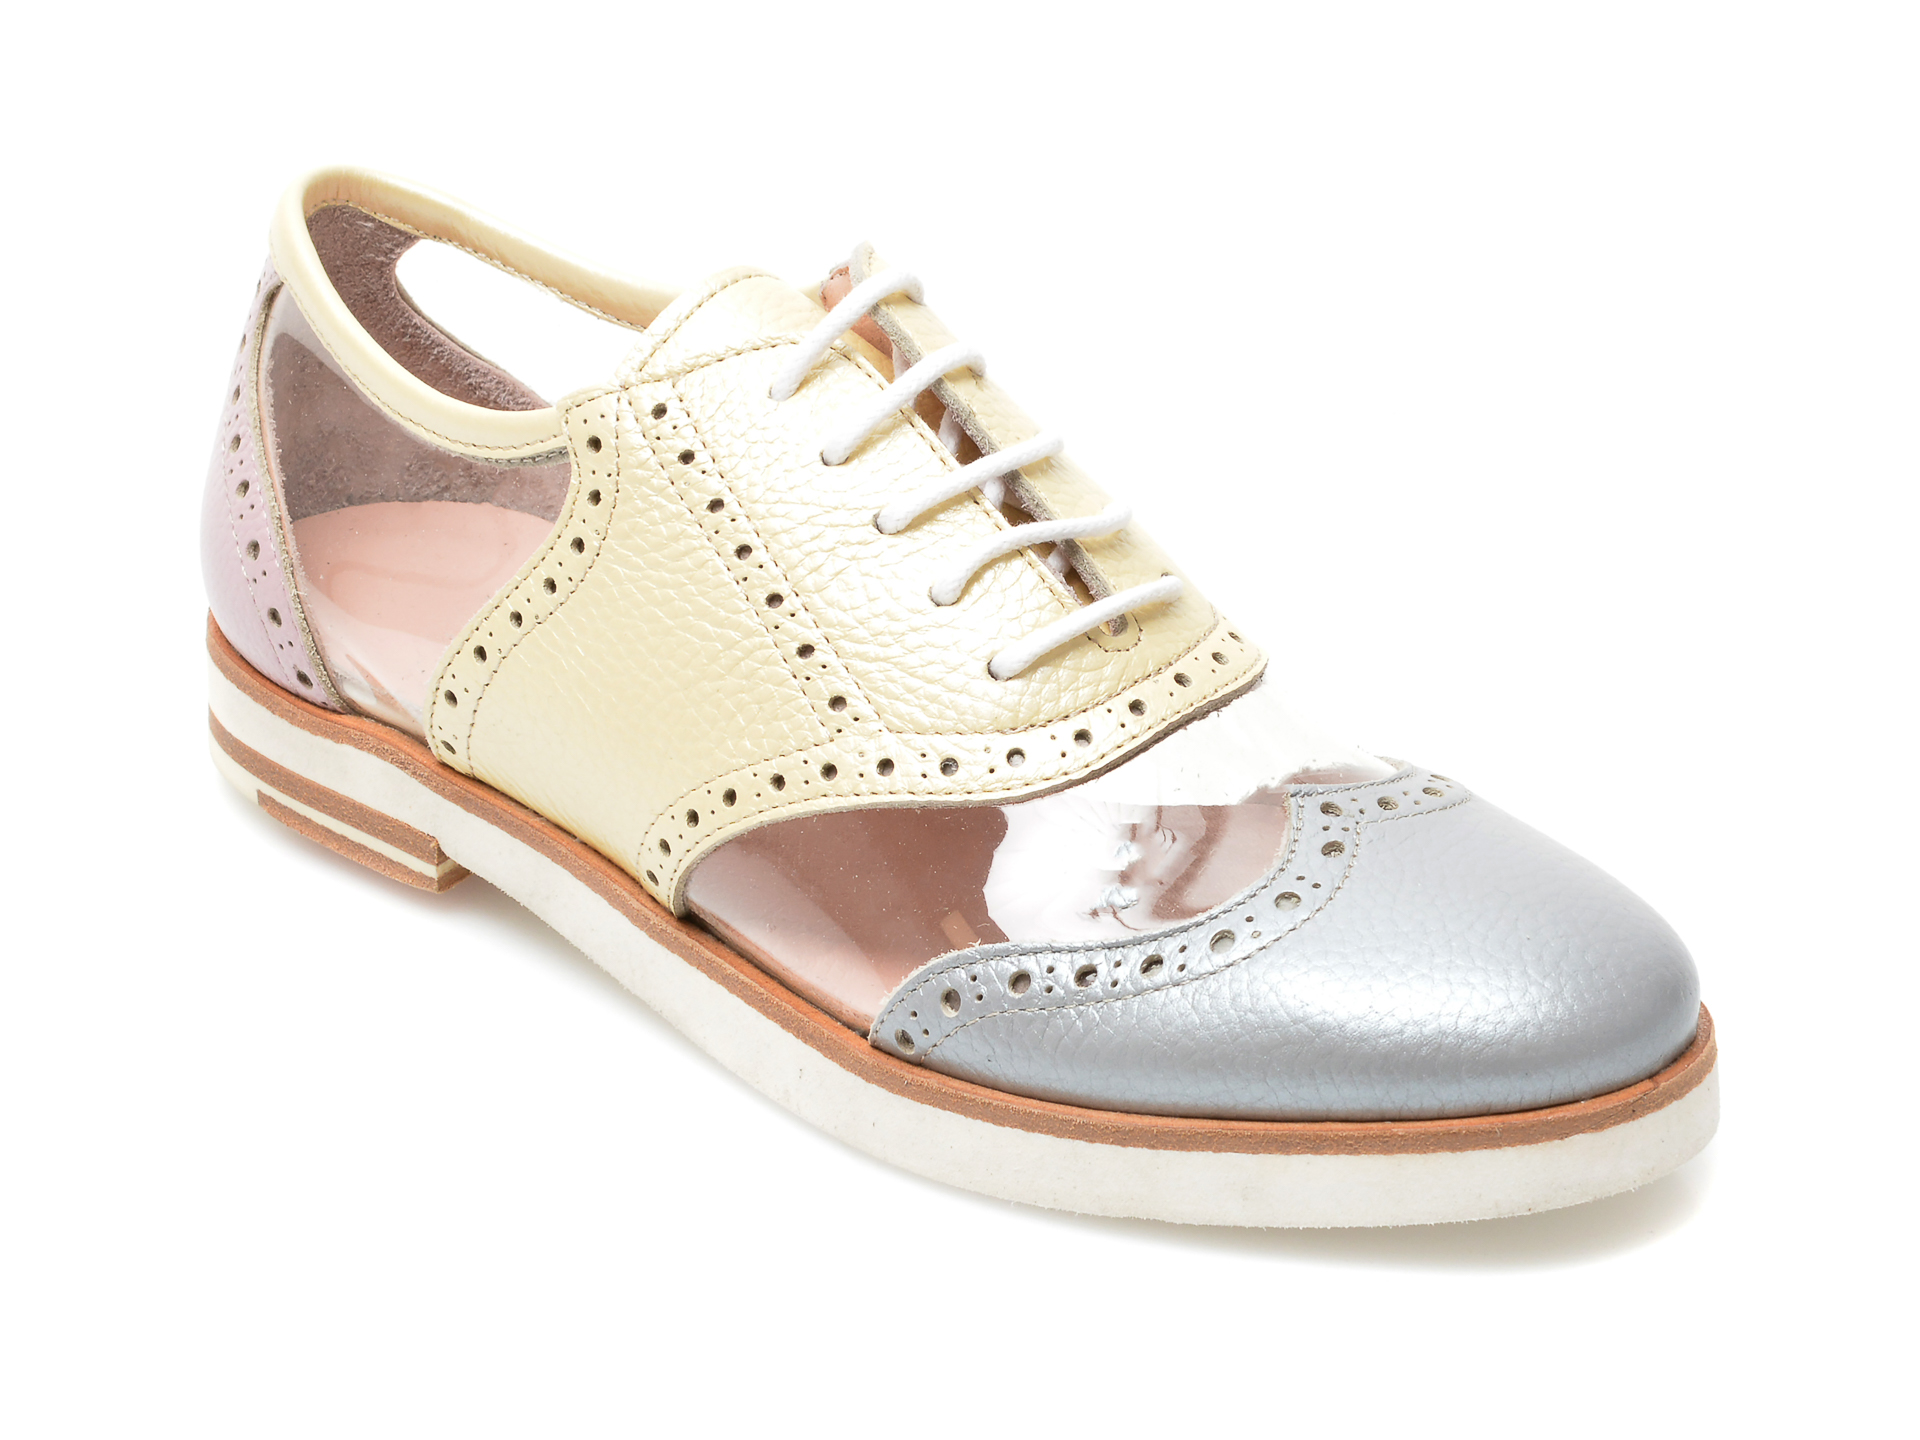 Pantofi LABOUR multicolori, 403, din piele naturala /femei/pantofi